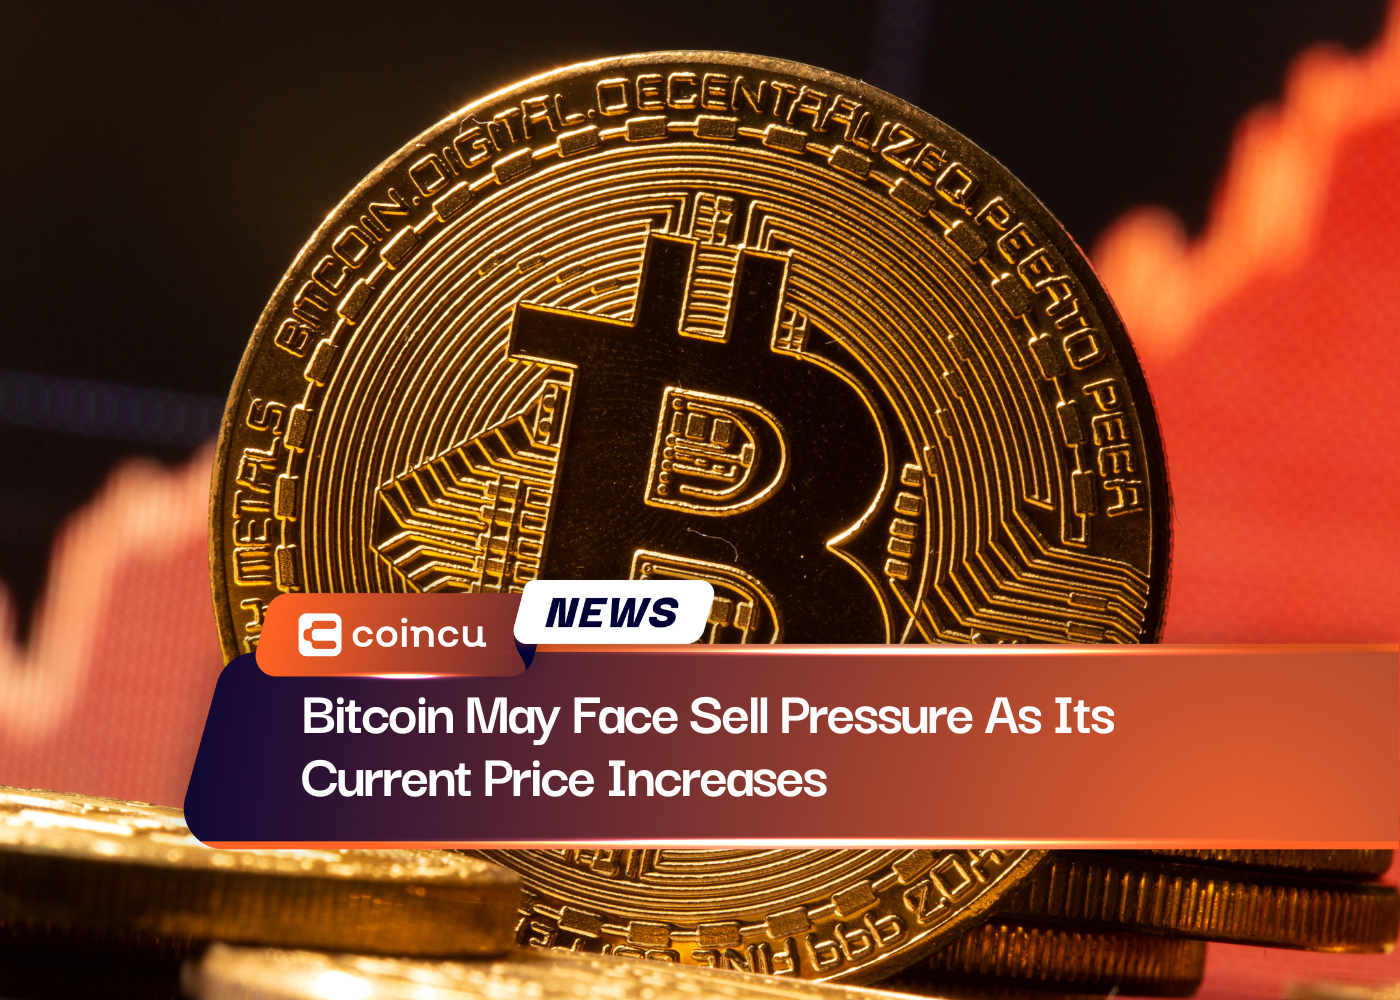 Bitcoin pode enfrentar pressão de venda à medida que seu preço atual aumenta